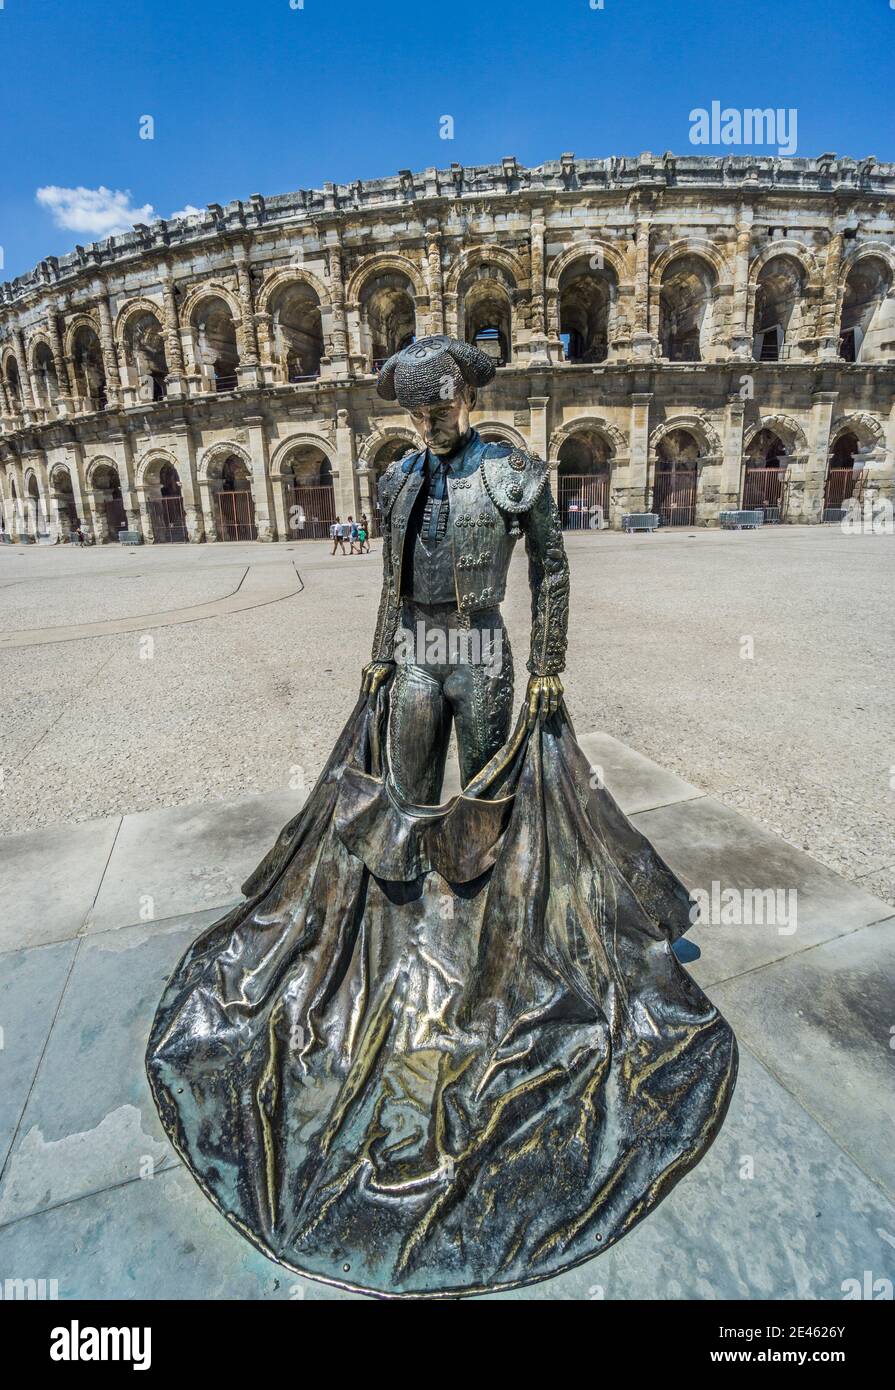 Skulptur des Stierkampfes Nimeño II. Im römischen Amphitheater Arena von Nîmes, Nimes; Abteilung Gard, Region Okzitanien, Südfrankreich Stockfoto